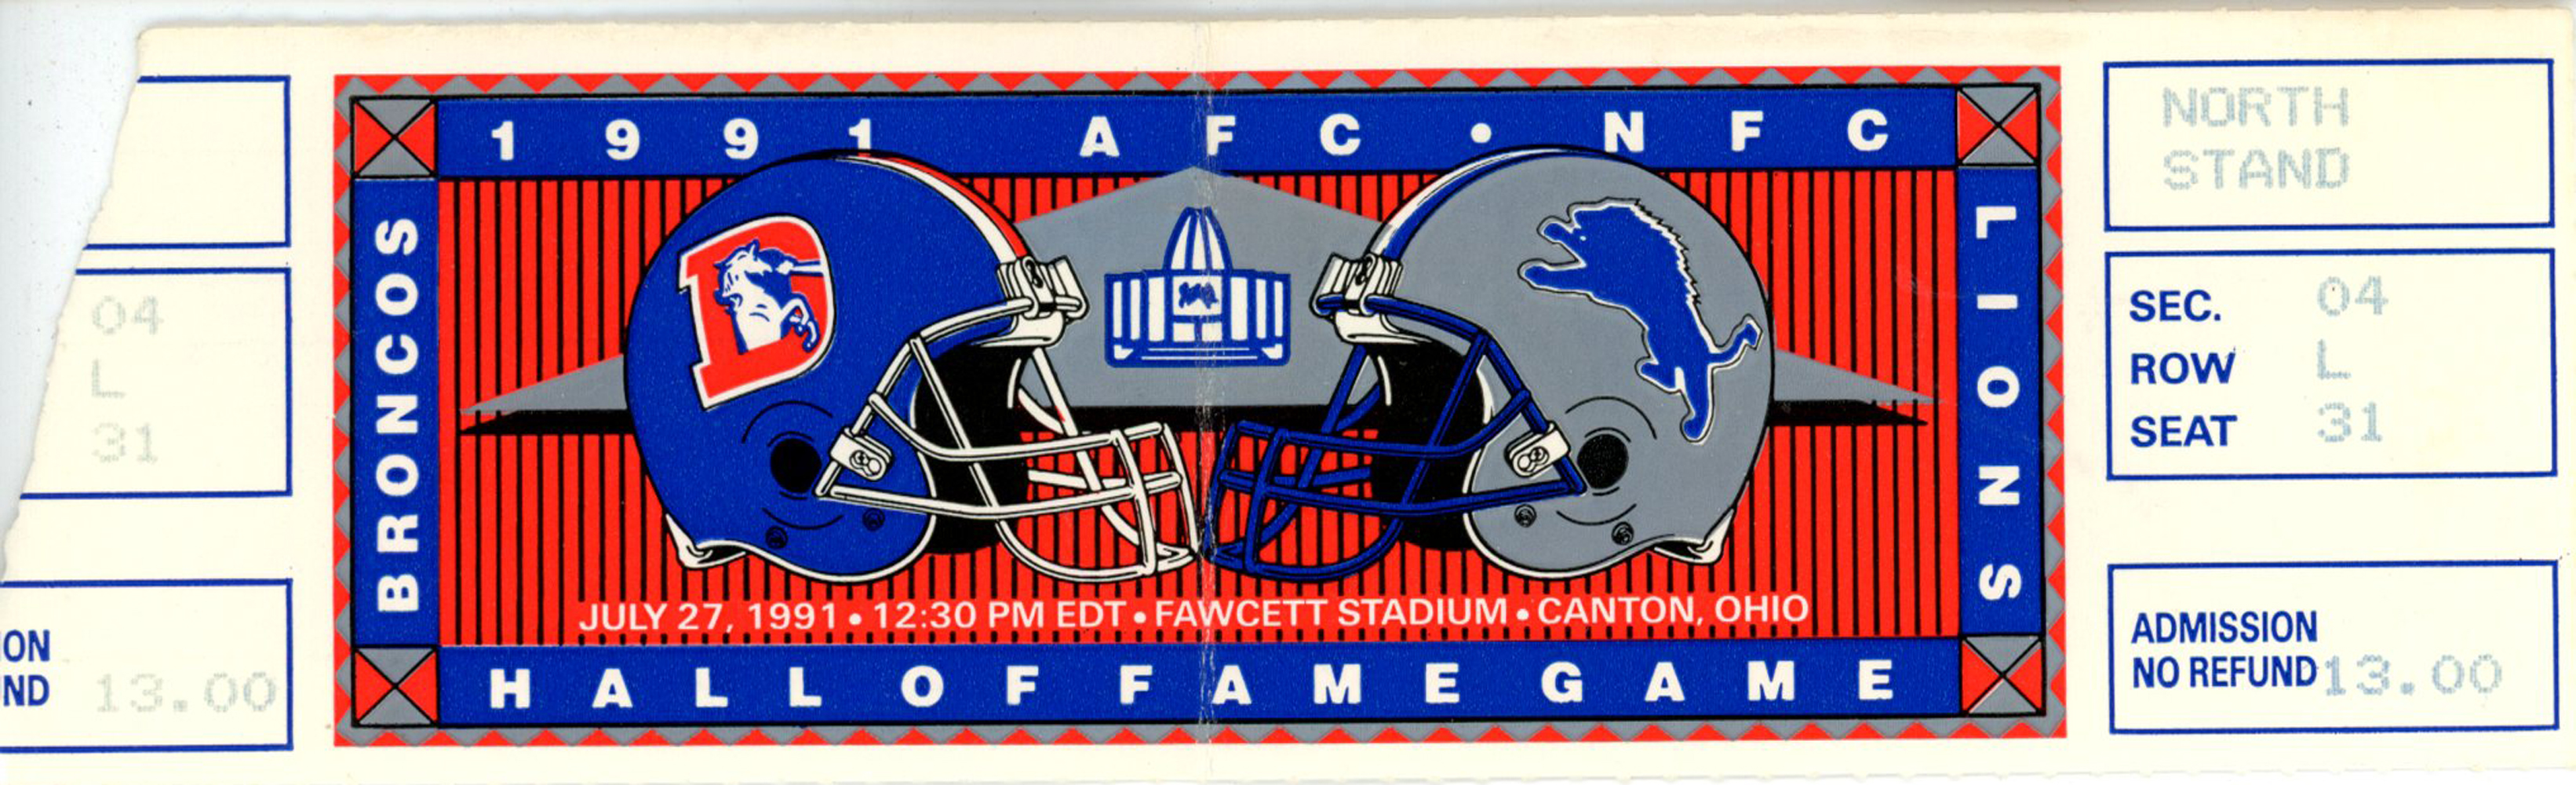 1991 Hall OF Fame Game Ticket Denver Broncos vs Detroit Lions